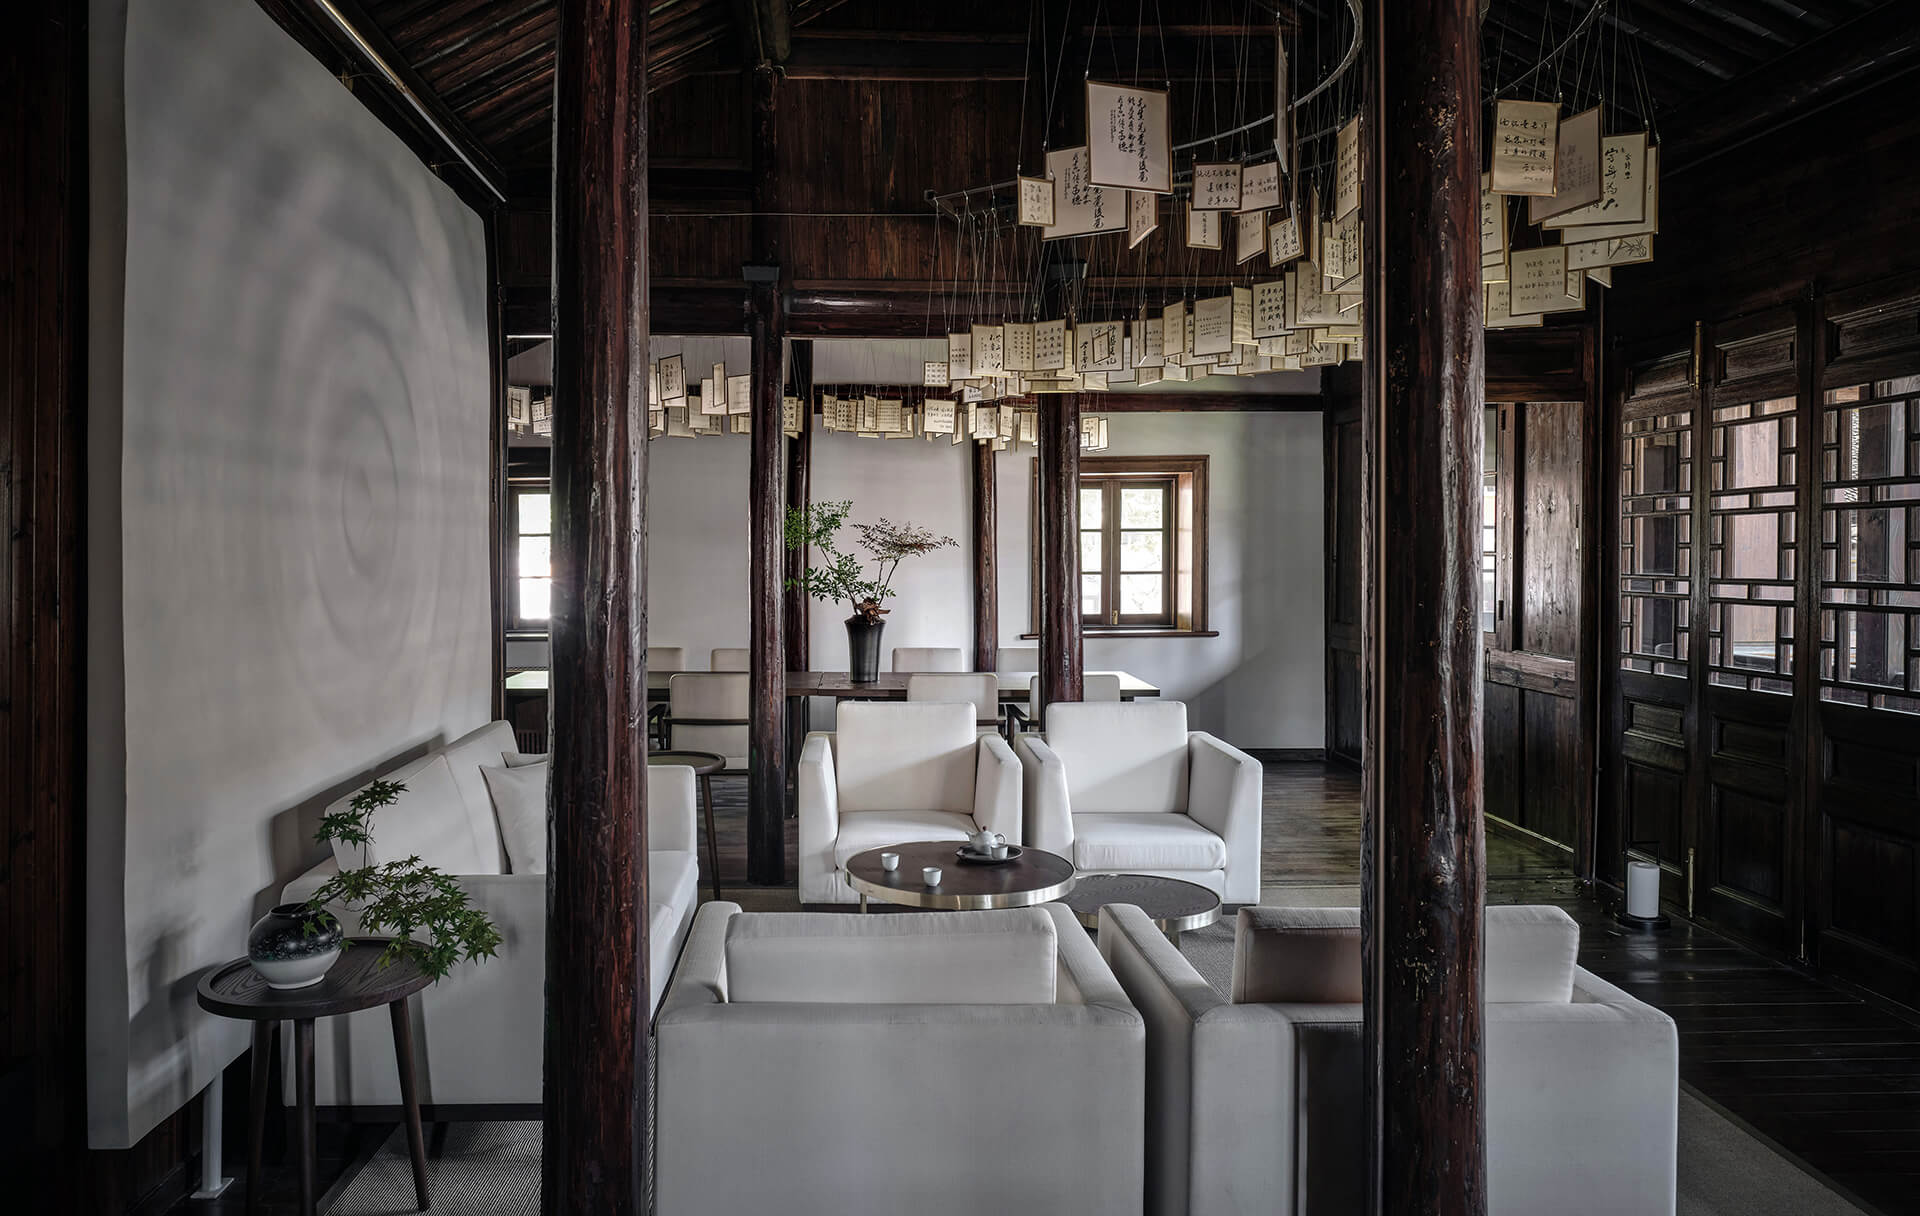 Thiết kế nhà ở theo phong cách Chinese - Trung Hoa sử dụng các vật liệu tự nhiên